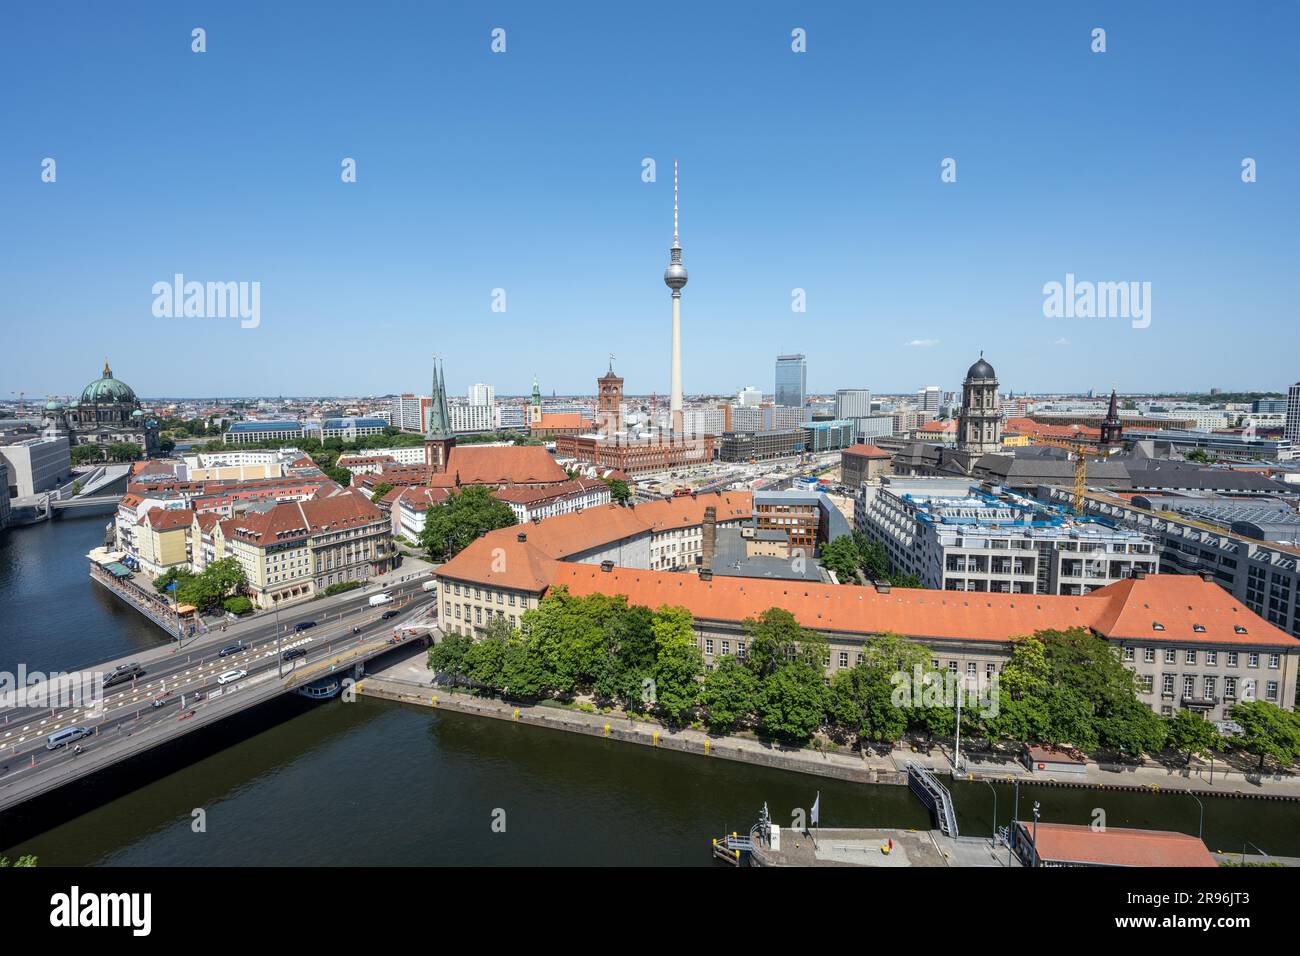 Das Zentrum von Berlin mit dem berühmten Fernsehturm an einem sonnigen Tag Stockfoto